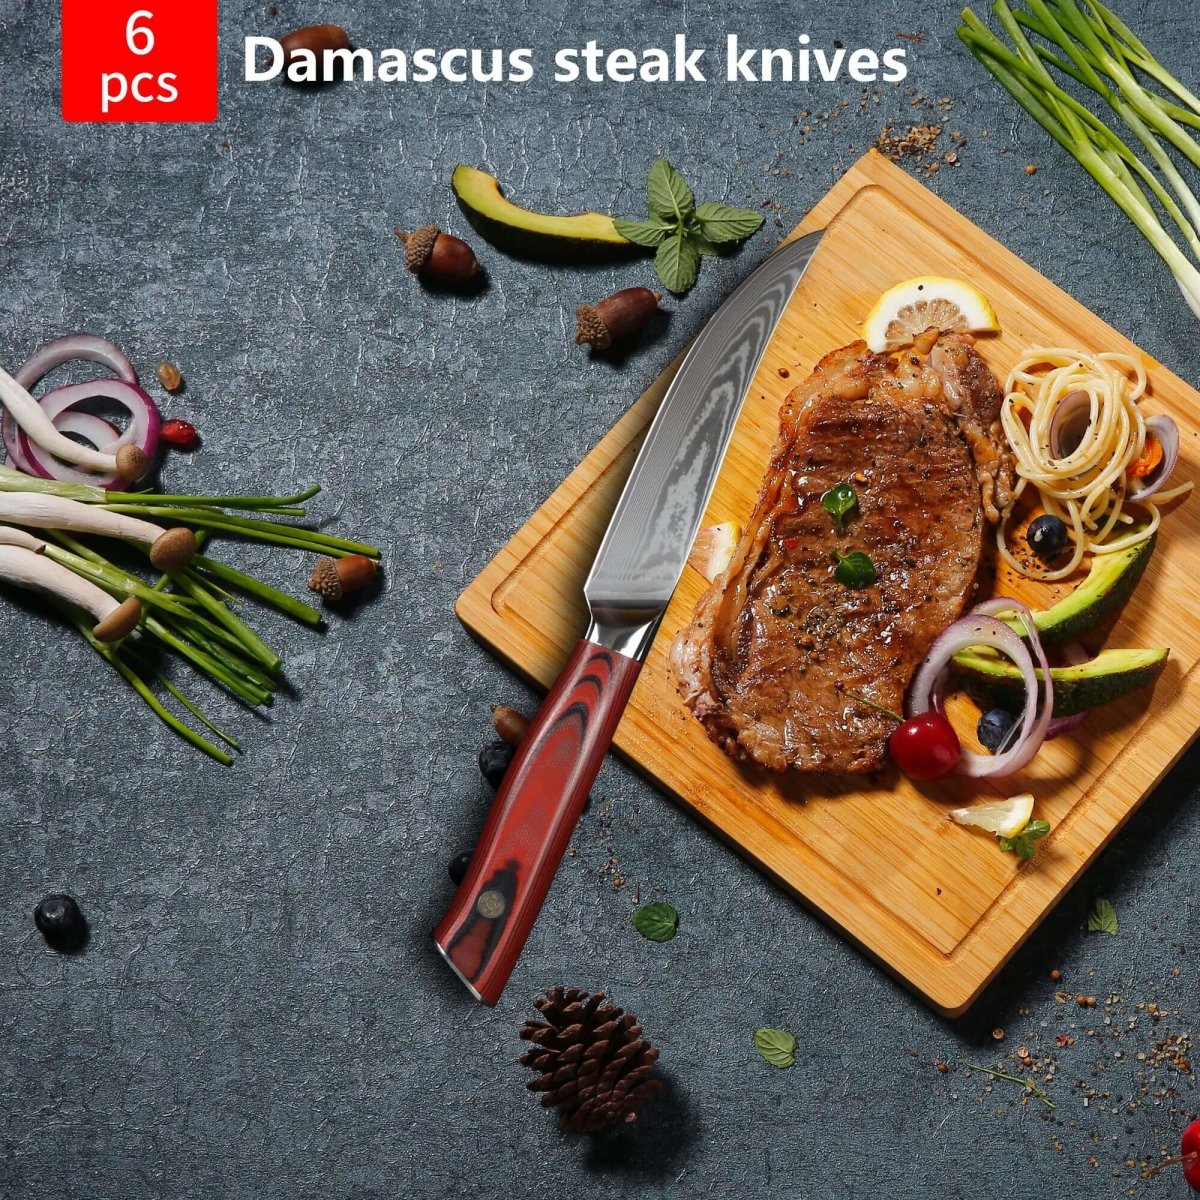 Japanese Steel Damascus steak knife